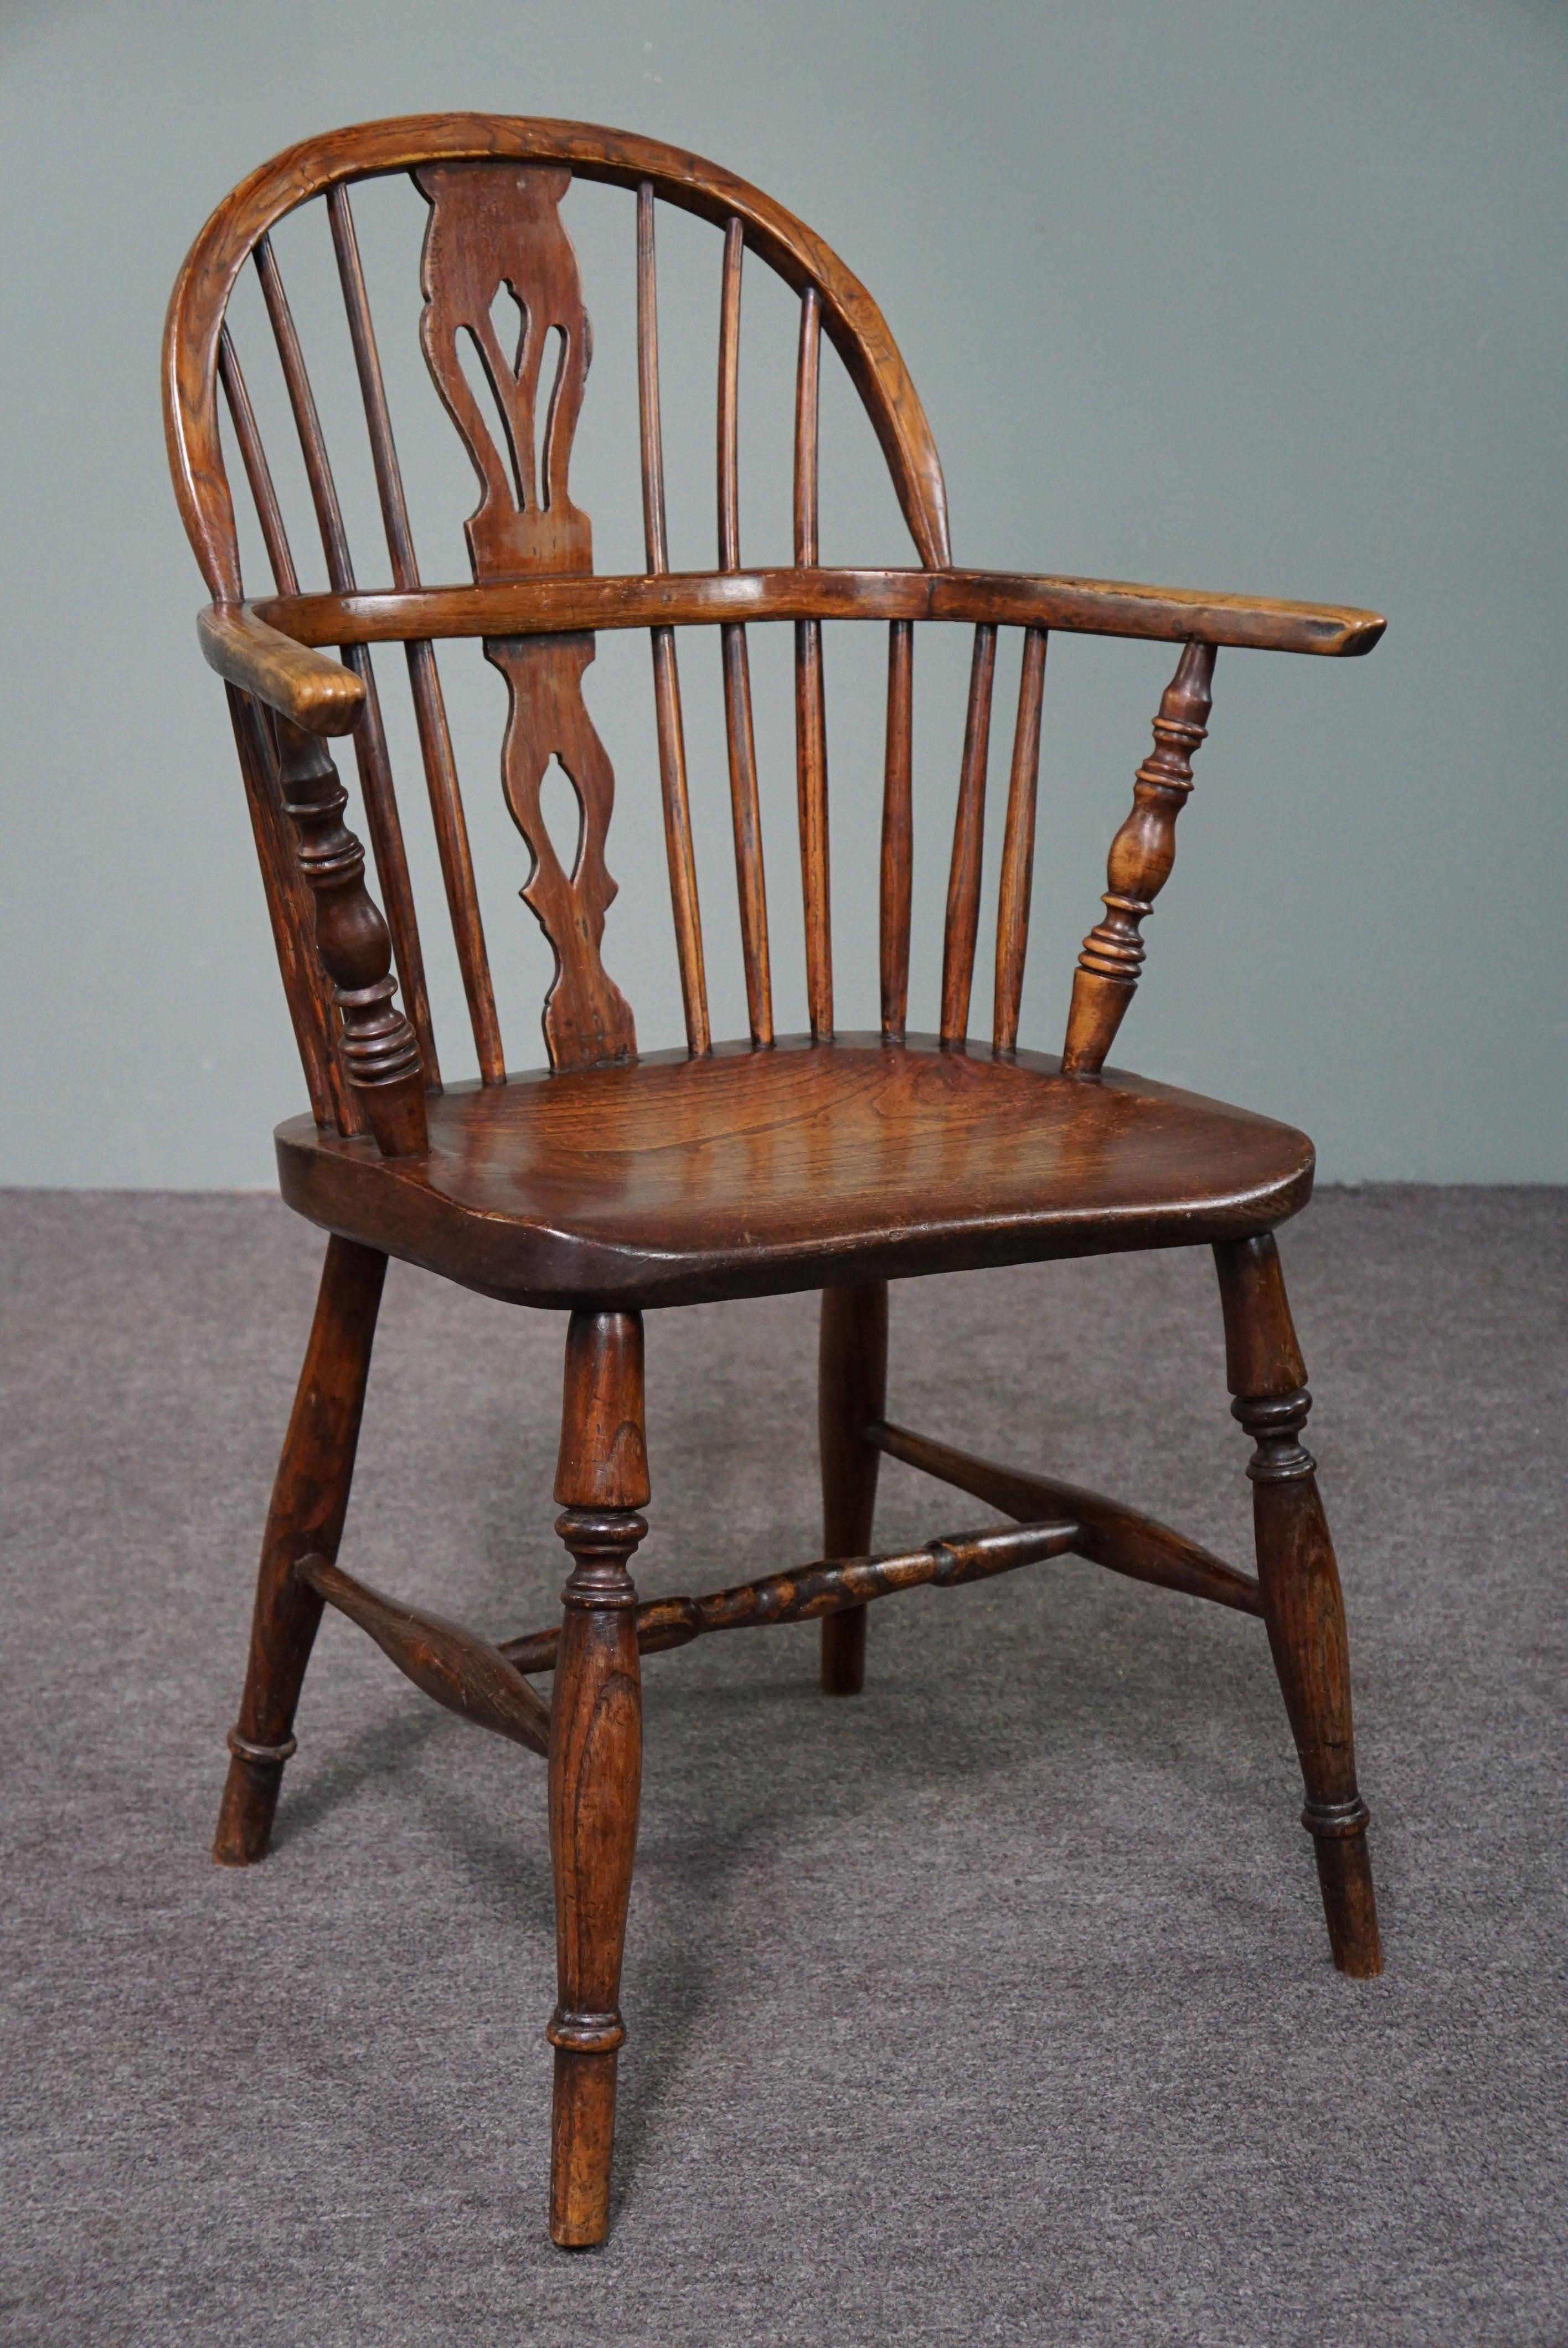 Nous vous proposons ce beau fauteuil ancien en bois massif avec un très bel aspect caractéristique.

Ce magnifique fauteuil Windsor anglais ancien avec accoudoirs est doté d'une assise en bois massif épaisse et bien formée. La chaise a de charmants